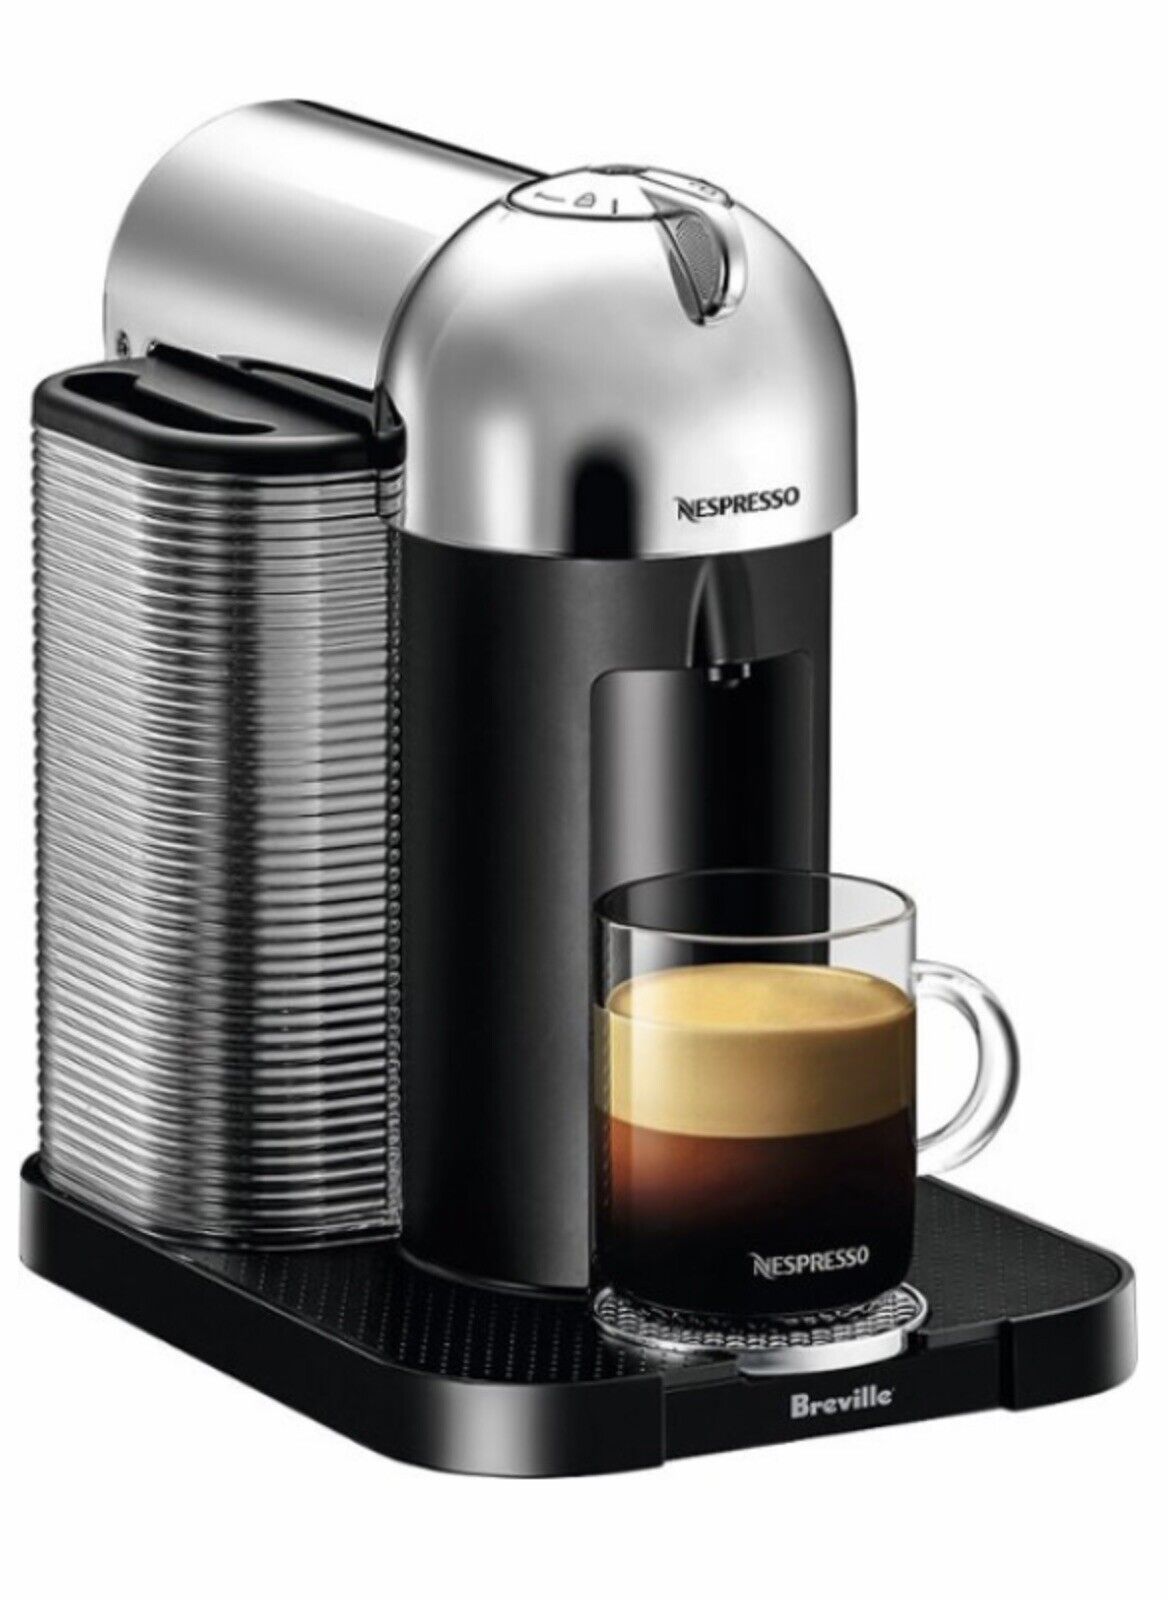 Breville Nespresso Vertuo Espresso Maker/Coffeemaker – Chrome